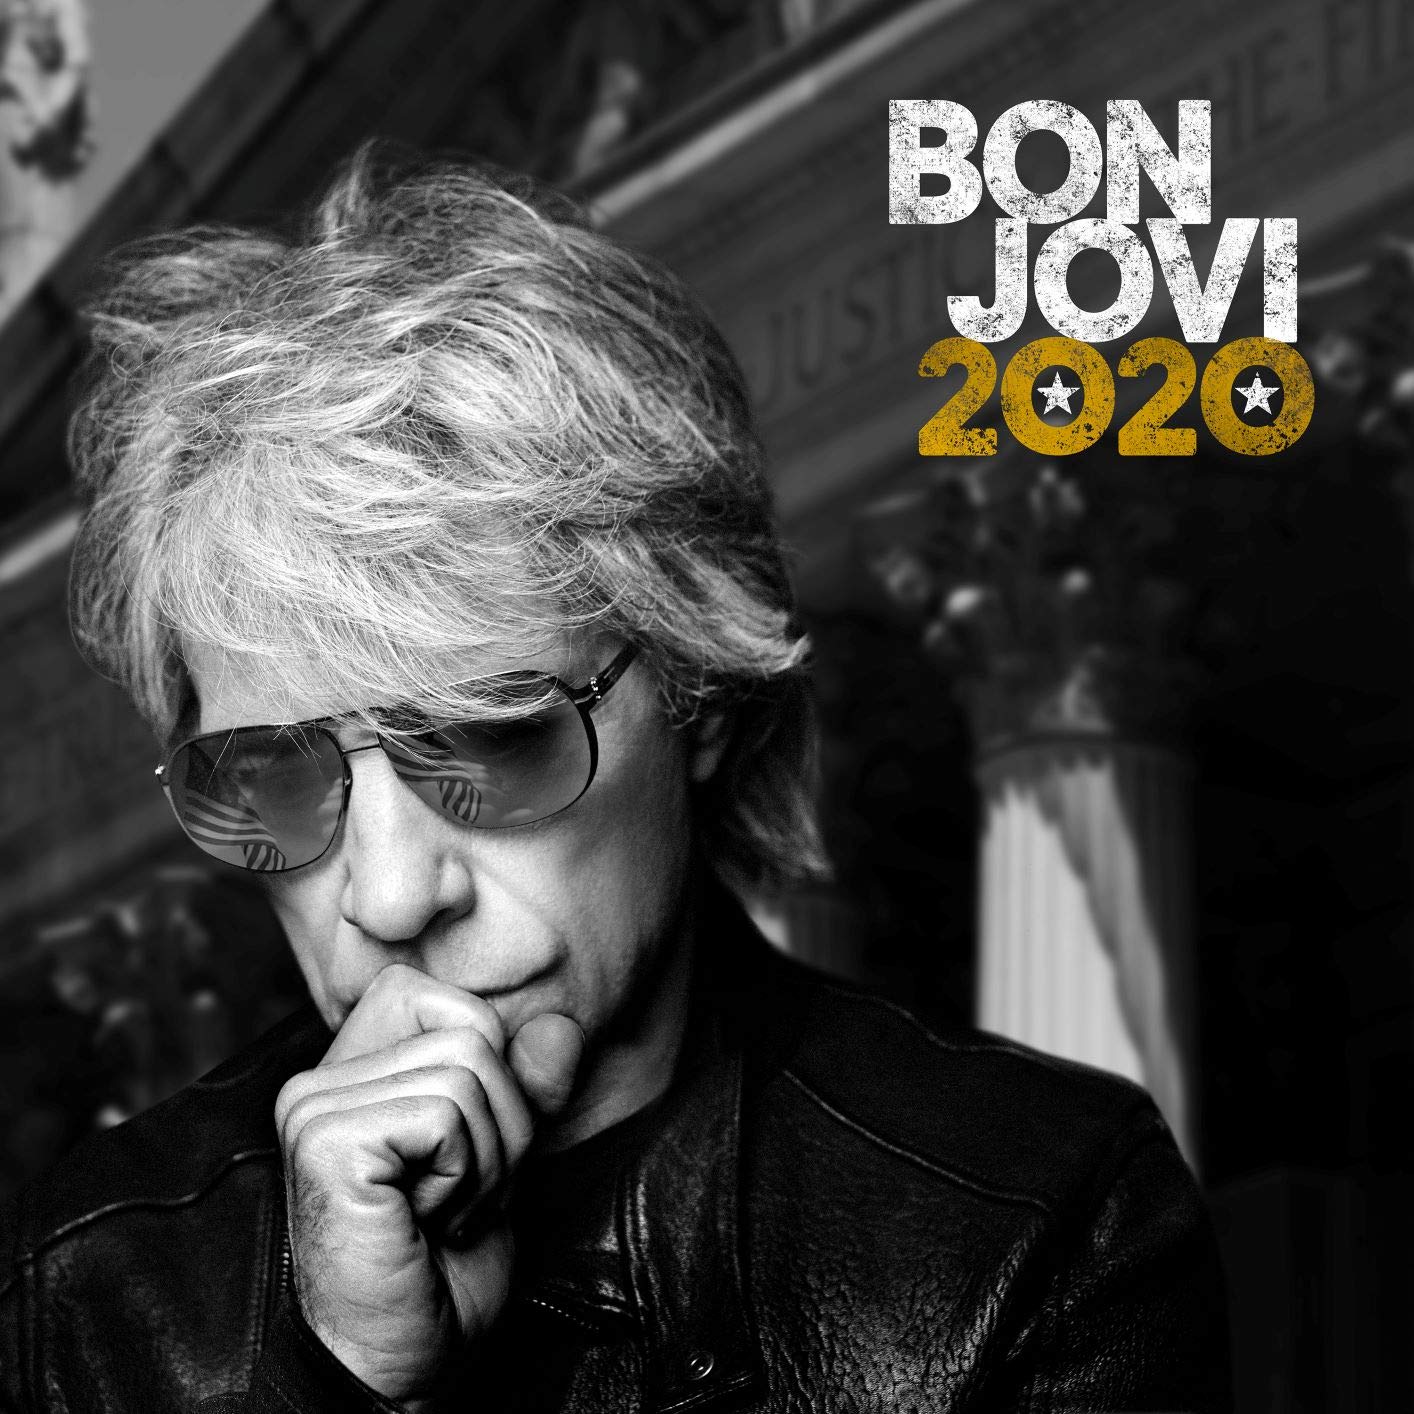 Audio Cd Bon Jovi - Bon Jovi 2020 Japanese Deluxe Edition 2 Cd NUOVO SIGILLATO EDIZIONE DEL SUBITO DISPONIBILE